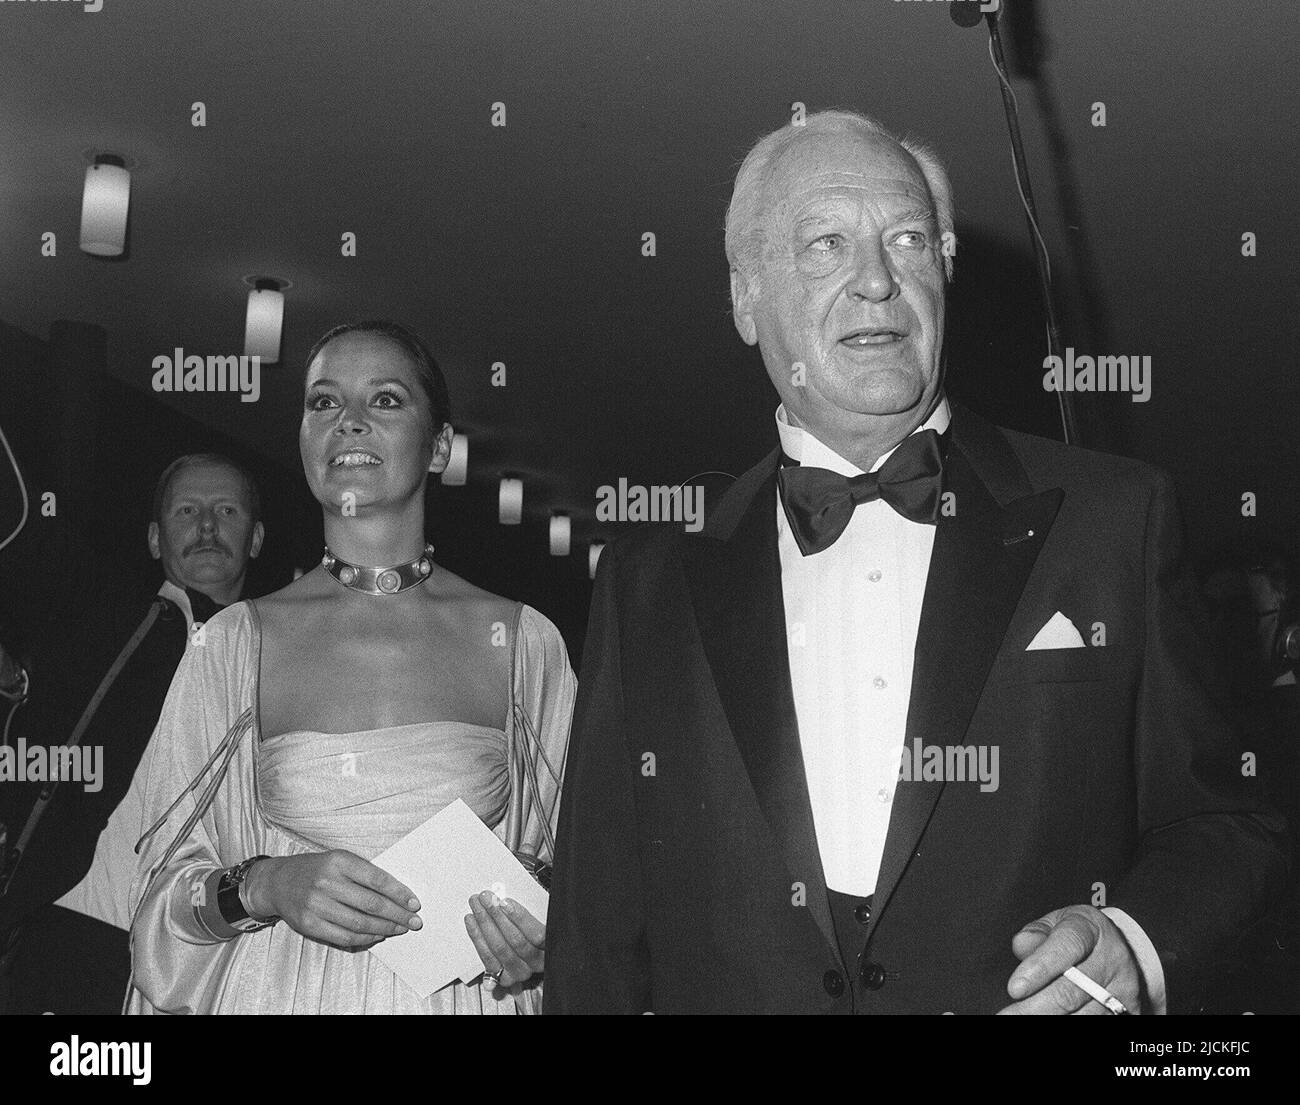 ARCHIVE PHOTO: Il y a 40 ans, sur 18 juin 1982, l'acteur Curd JUERGENS est mort, 04SN JUERGENS.jpg l'acteur Curd JUERGENS et son épouse Margie au bal de presse fédéral à Bonn. Banque D'Images